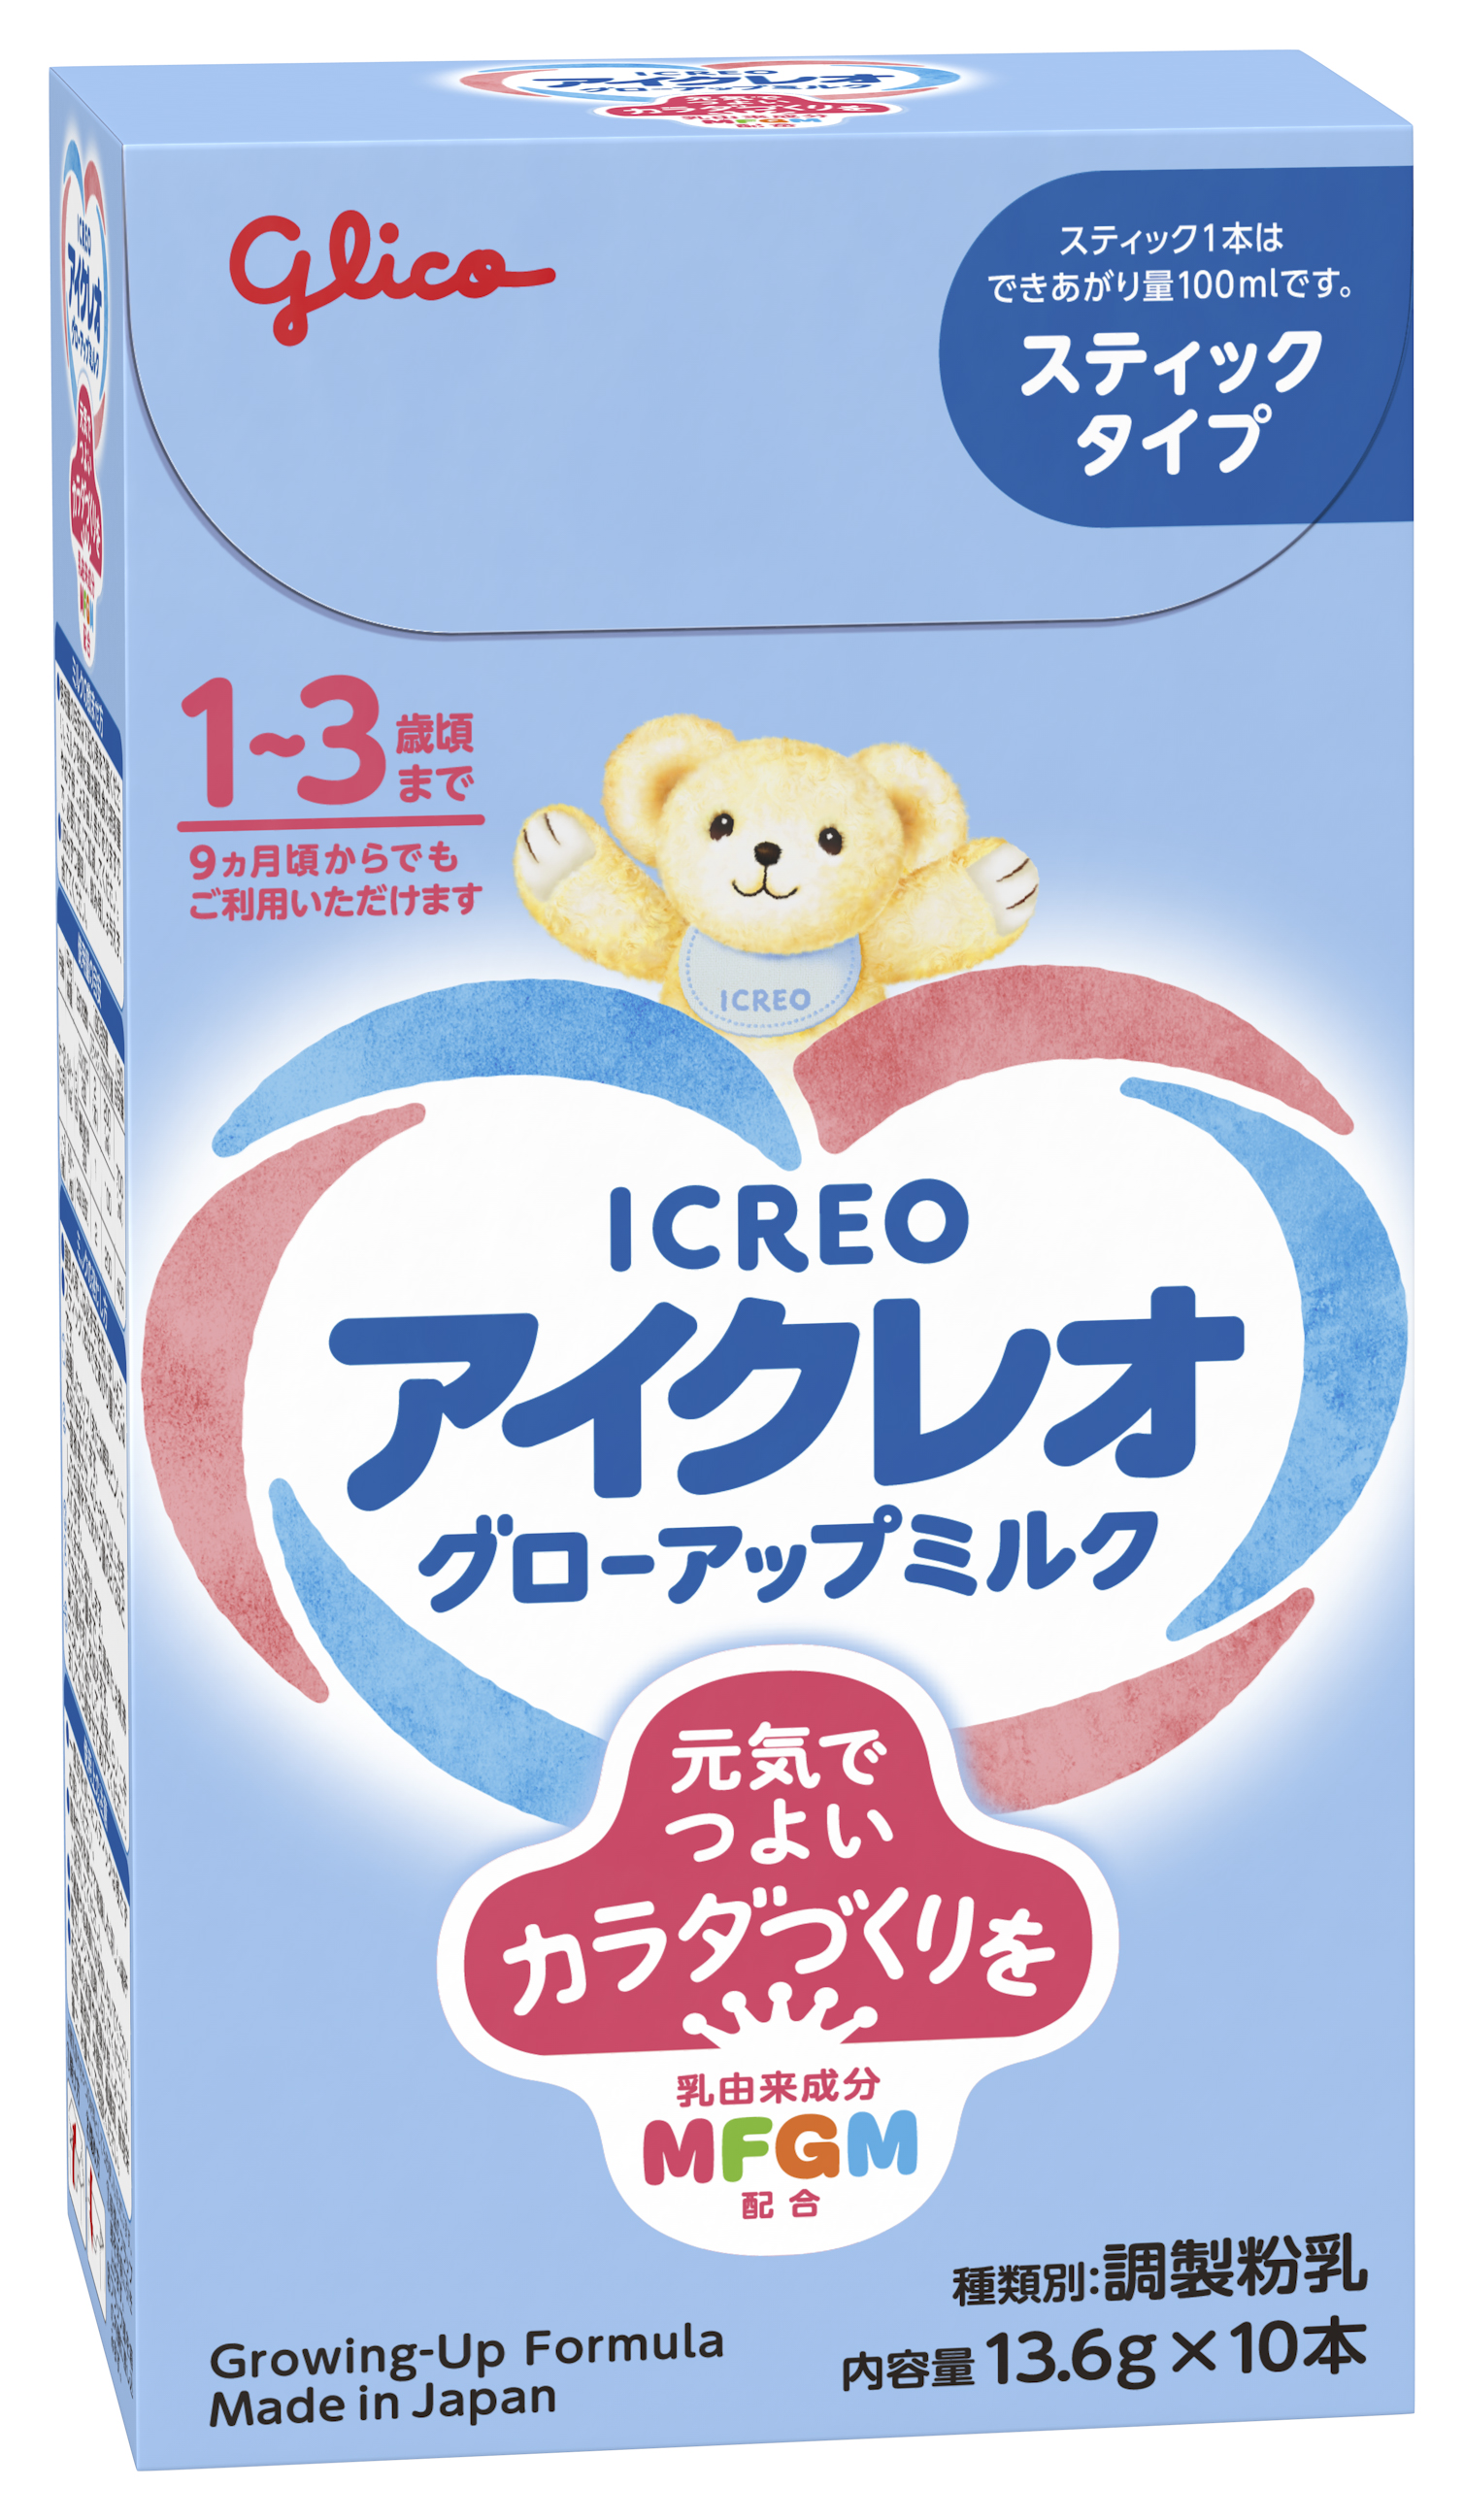 グリコ アイクレオ ミルク 赤ちゃん 粉ミルク - 授乳、食事用品